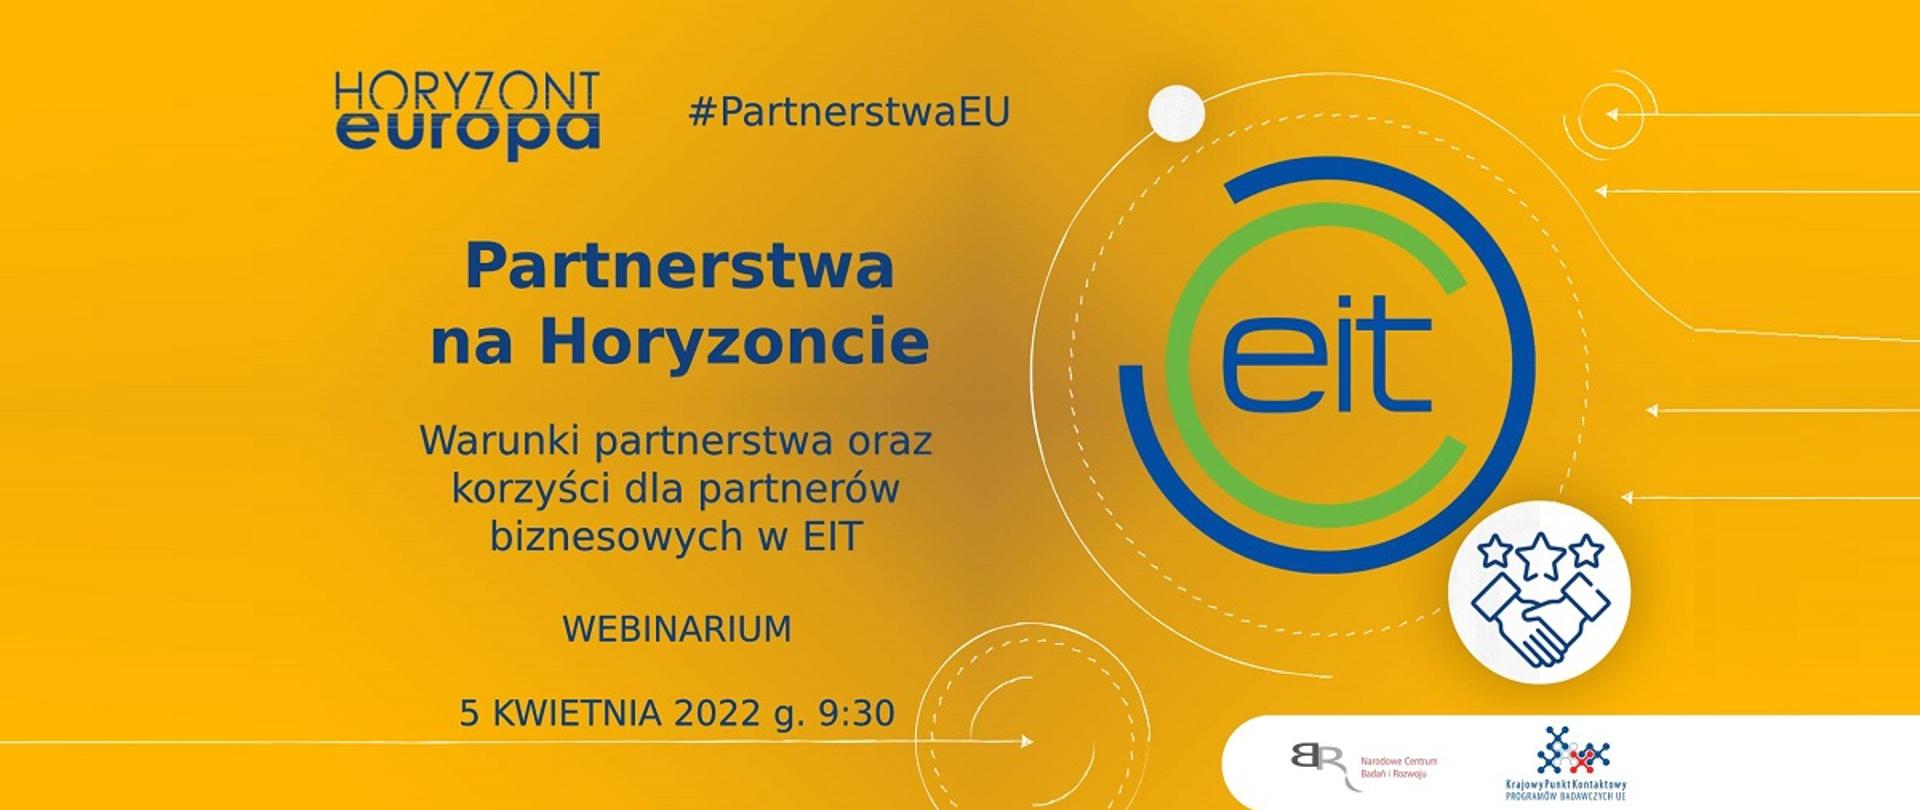 Horyzont Europa
#PartnerstwaEU
Partnerstwa na Horyzoncie
Warunki partnerstwa oraz korzyści dla partnerów biznesowych w EIT
Webinarium 5 kwietnia 2022, g. 9:30